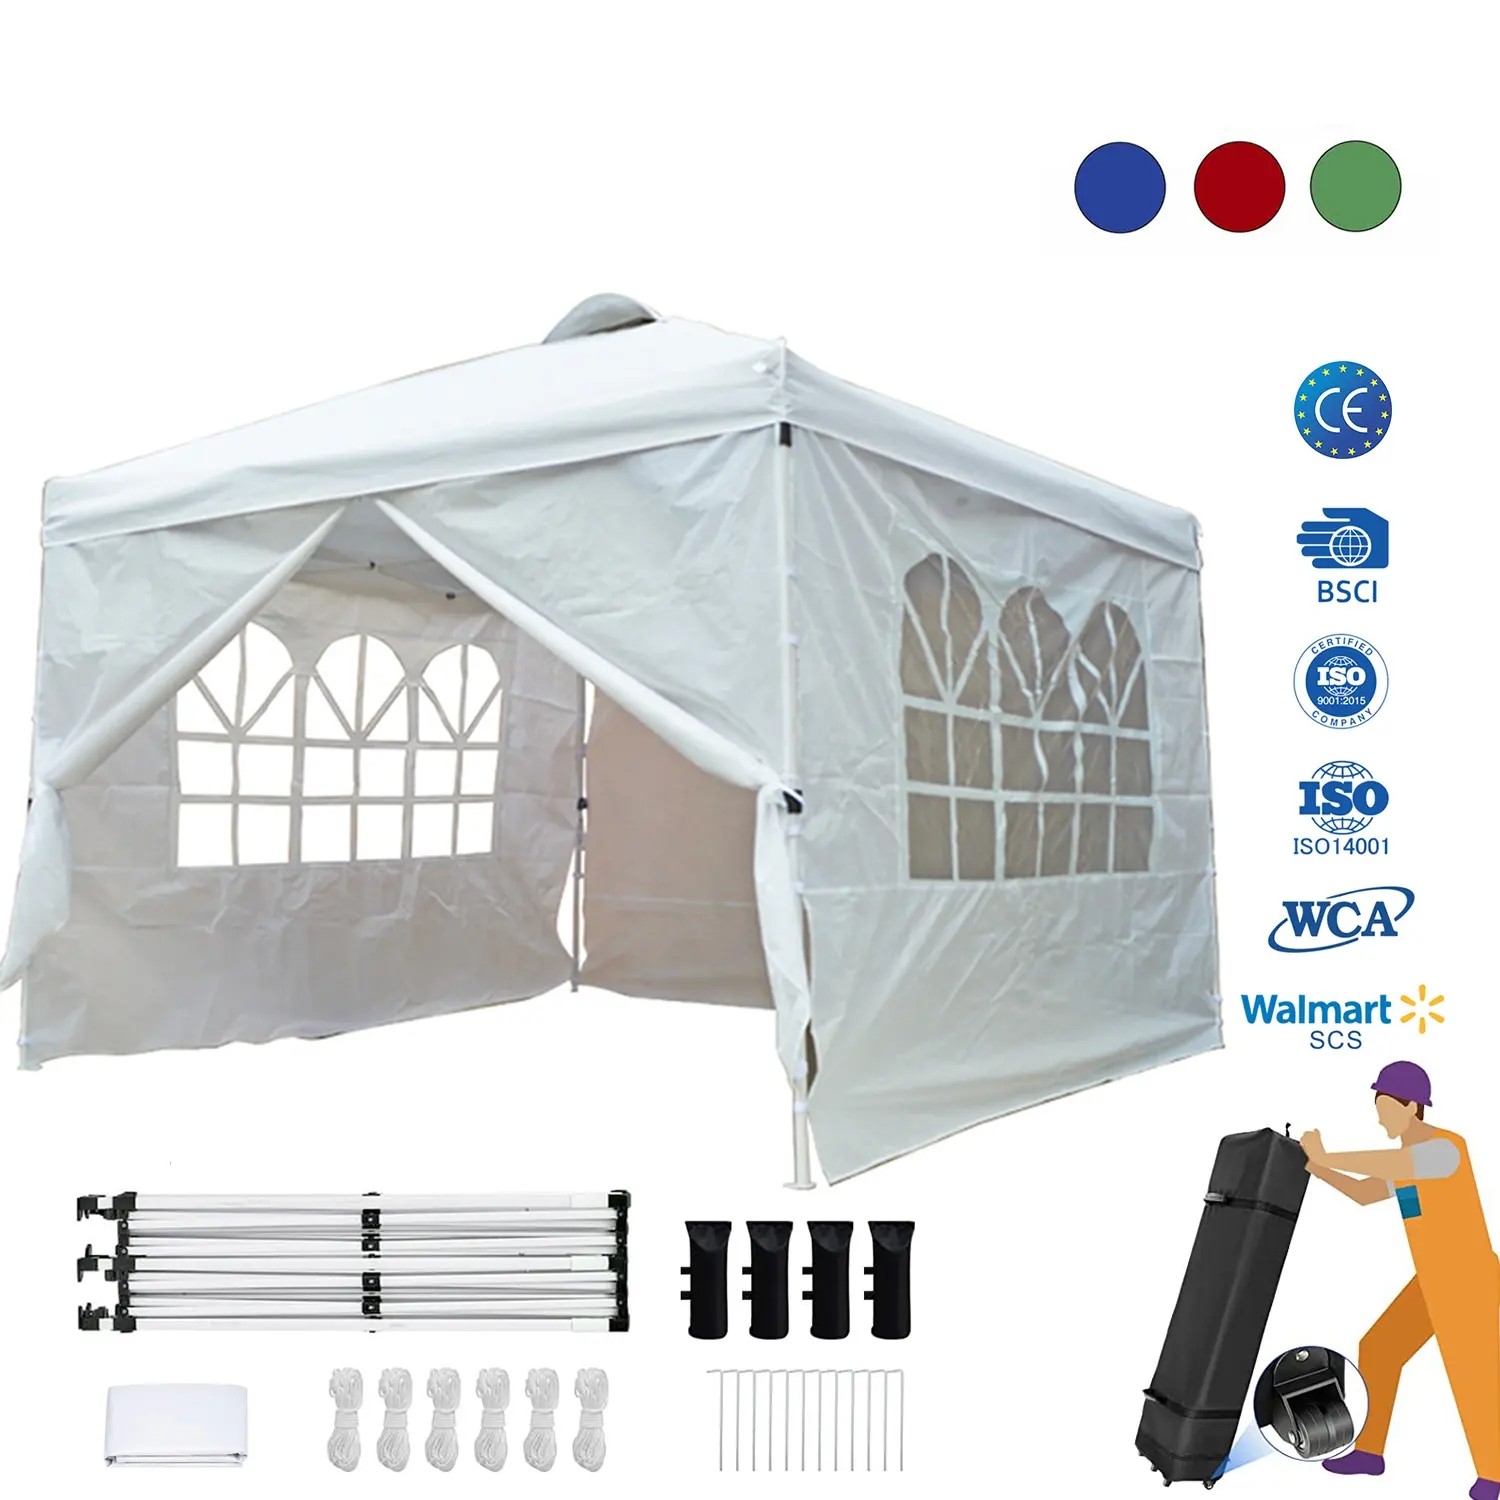 Беседка, садовая беседка, палатка для кемпинга на открытом воздухе, палатка с выдвижным навесом, беседка в комплекте, 3x3 алюминиевые складные палатки с боками